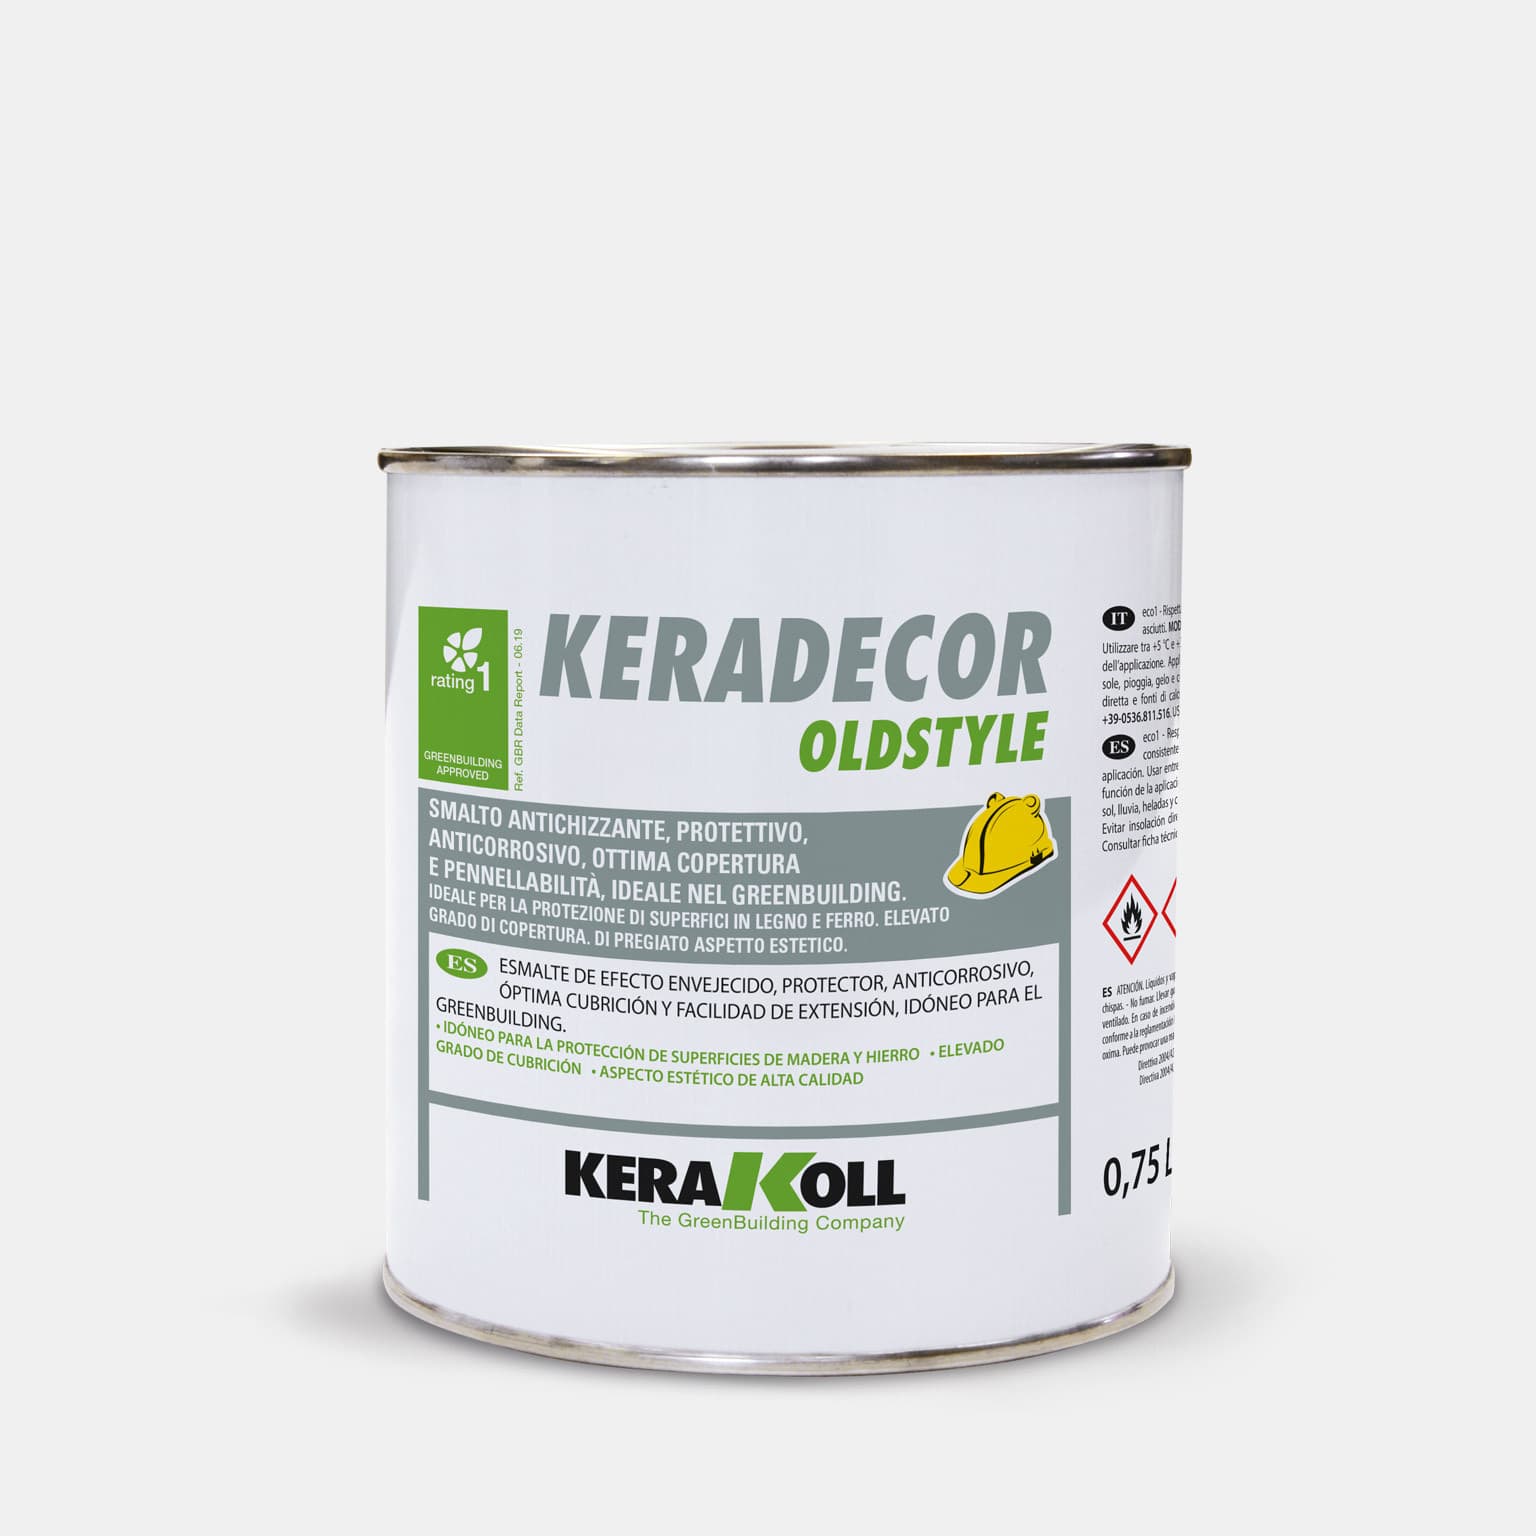 Kerakoll Keradecor Oldstyle: antikoló öko‑kompatibilis, védő‑ és korrózióvédő zománcfesték, kiváló fedőképességgel és felhordhatósággal, ideális a GreenBuildingnél.